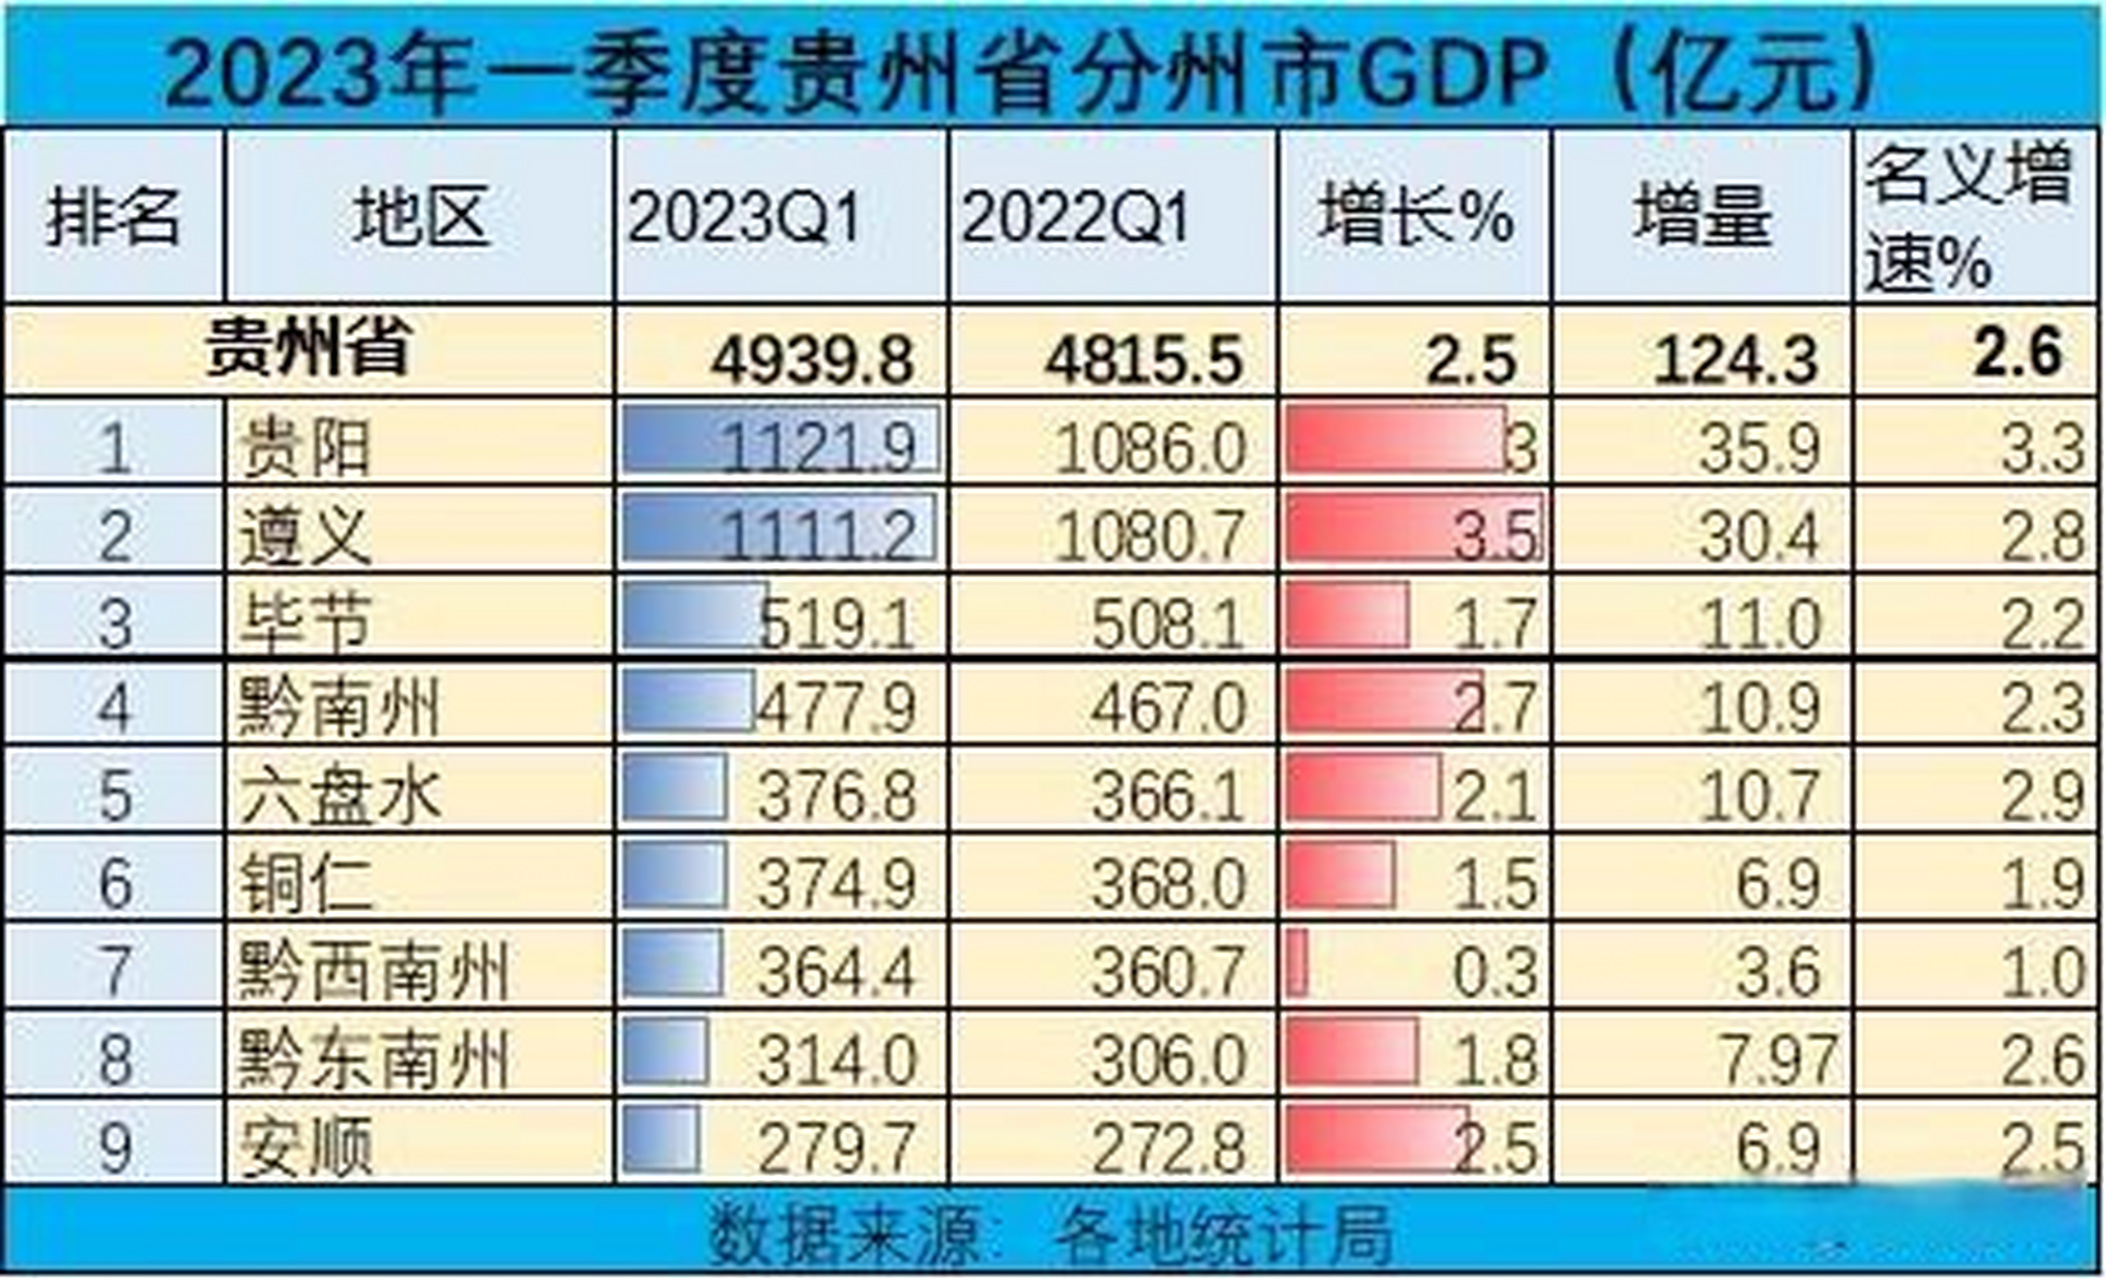 贵州省9市2023年一季度gdp排名 一季度全省gdp增速25%,全国排名倒三